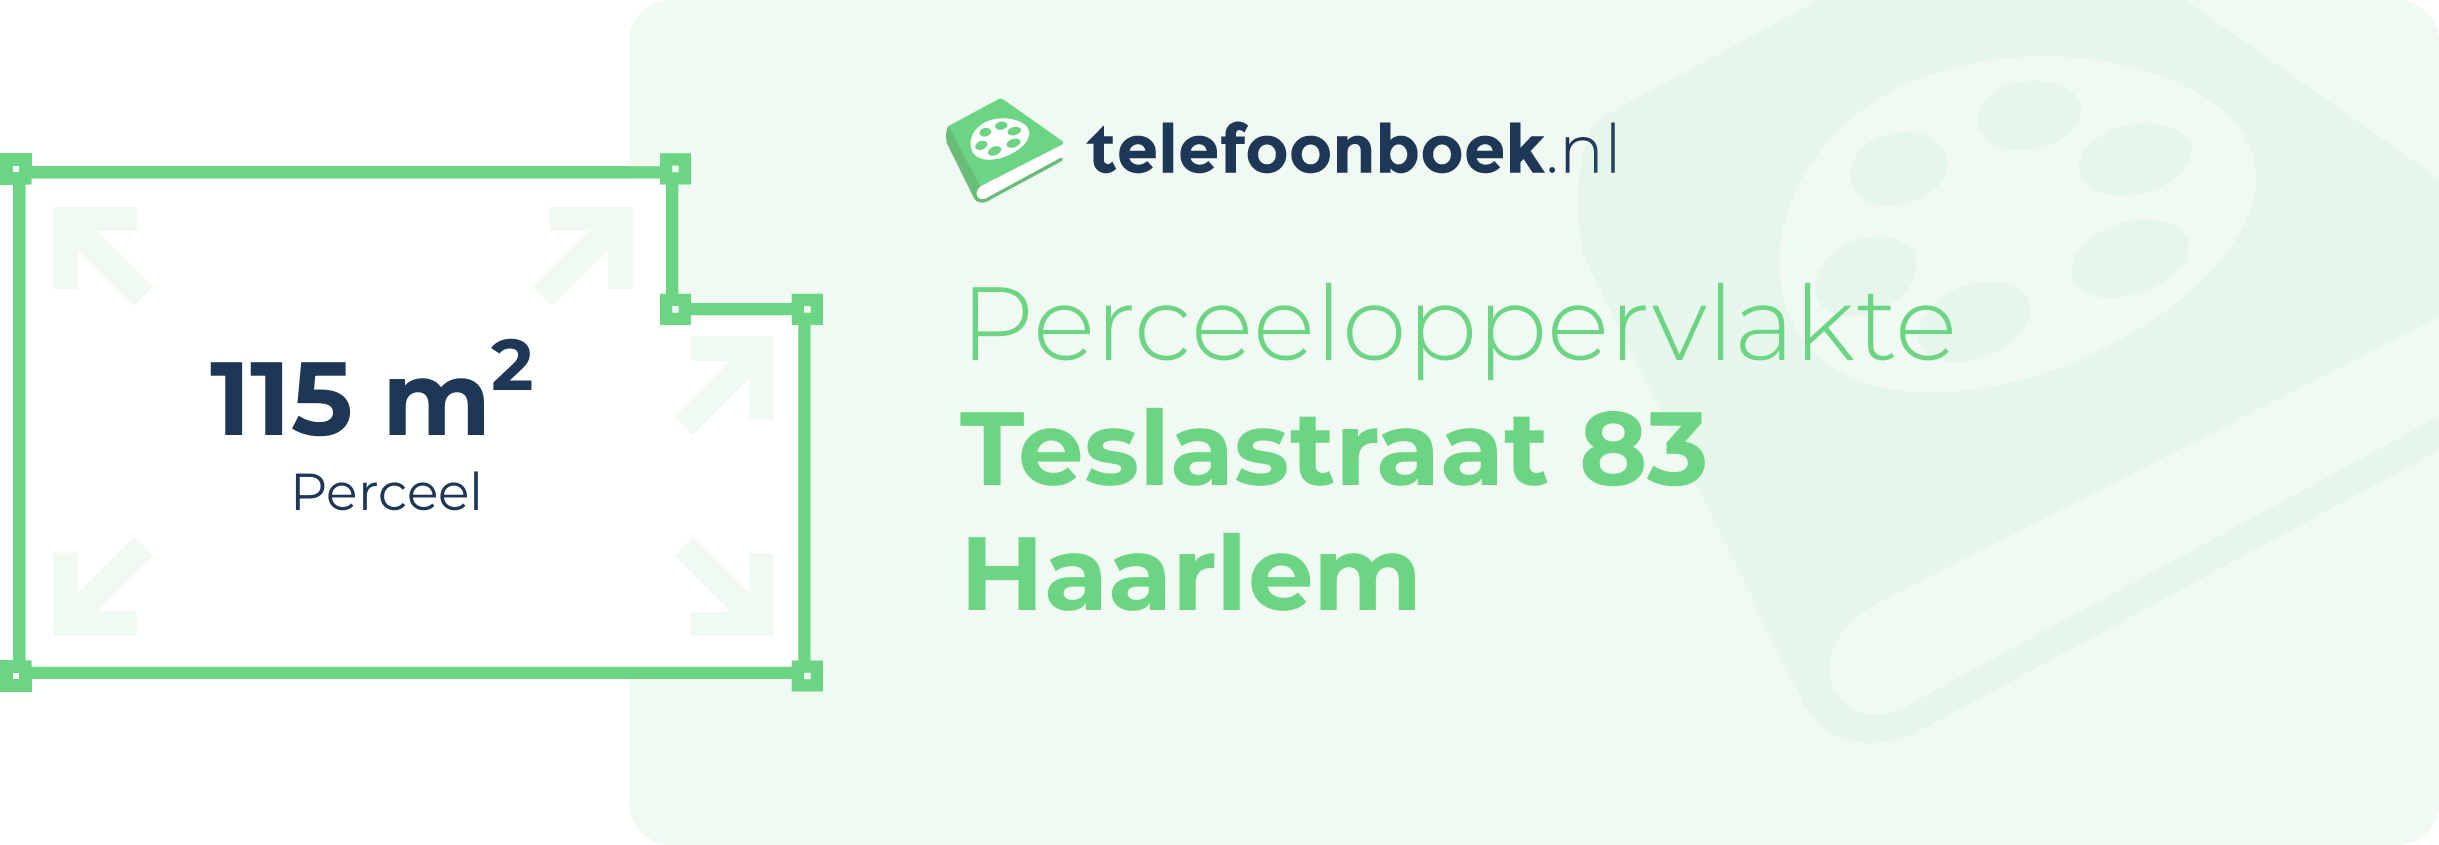 Perceeloppervlakte Teslastraat 83 Haarlem